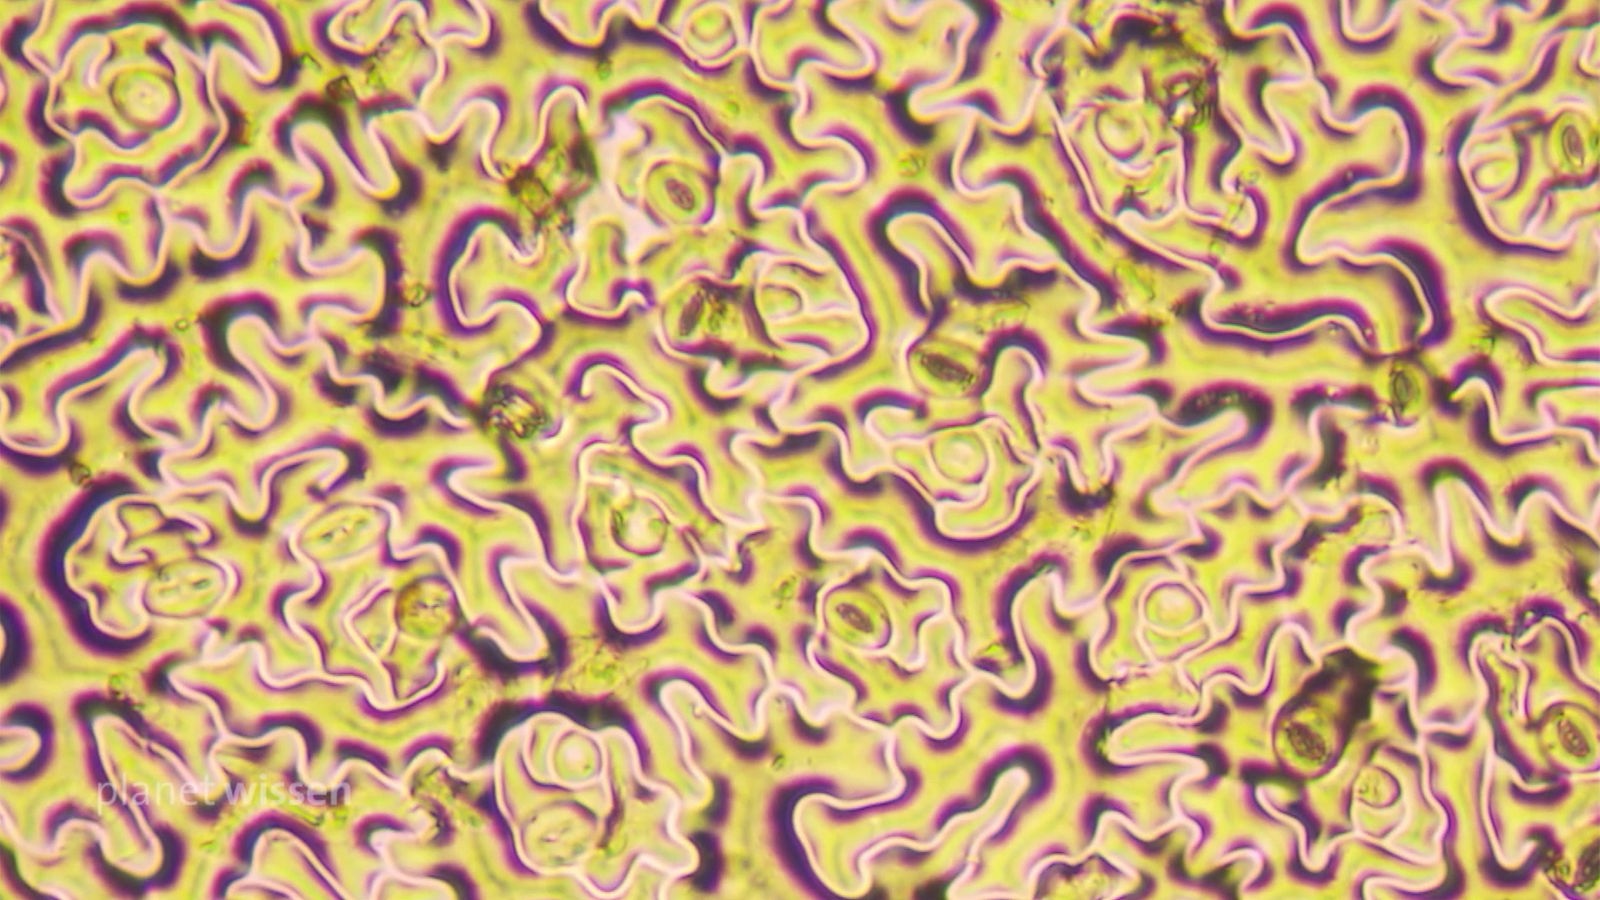 Pflanzenblatt unter dem Mikroskop: Zu sehen sind gewundene Strukturen, die an ein Gehirn erinnern.